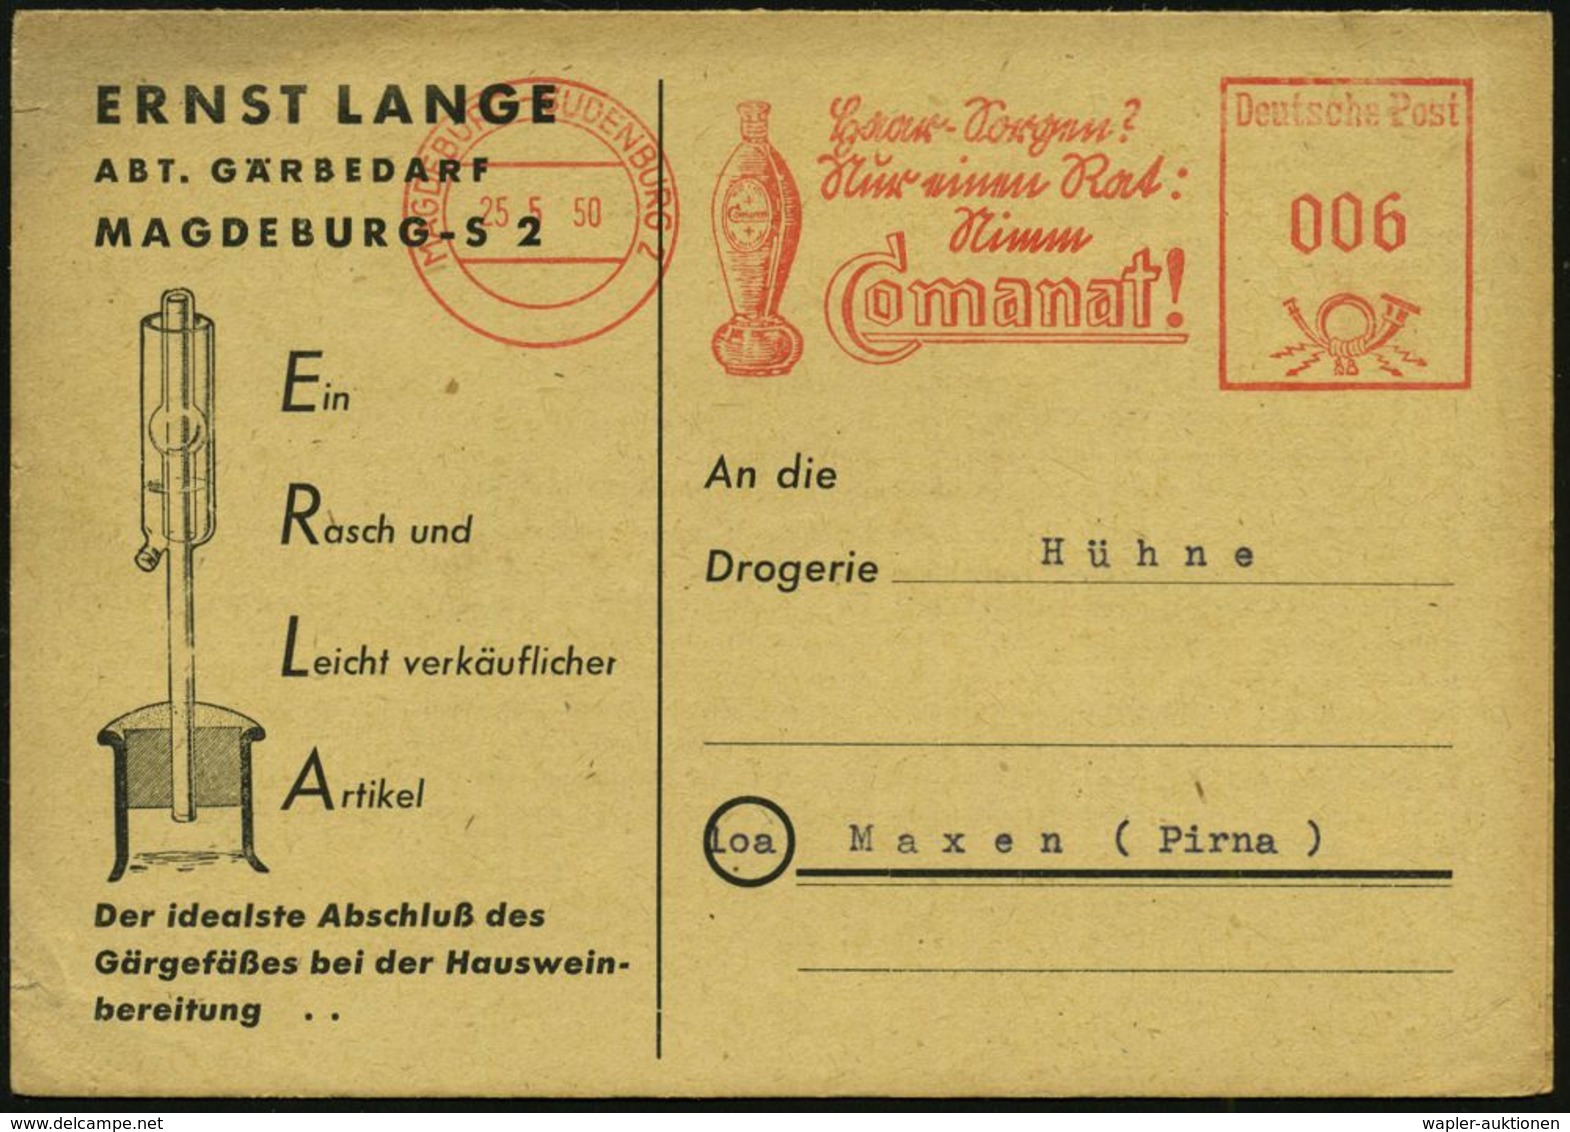 HAAR / BART / RASUR / FRISEUR : MAGDEBURG-SUDENBURG 2/ Haar-Sorgen?/ Nur Einen Rat./ Nimm/ Comanat! 1950 (25.5.) AFS, Te - Pharmazie